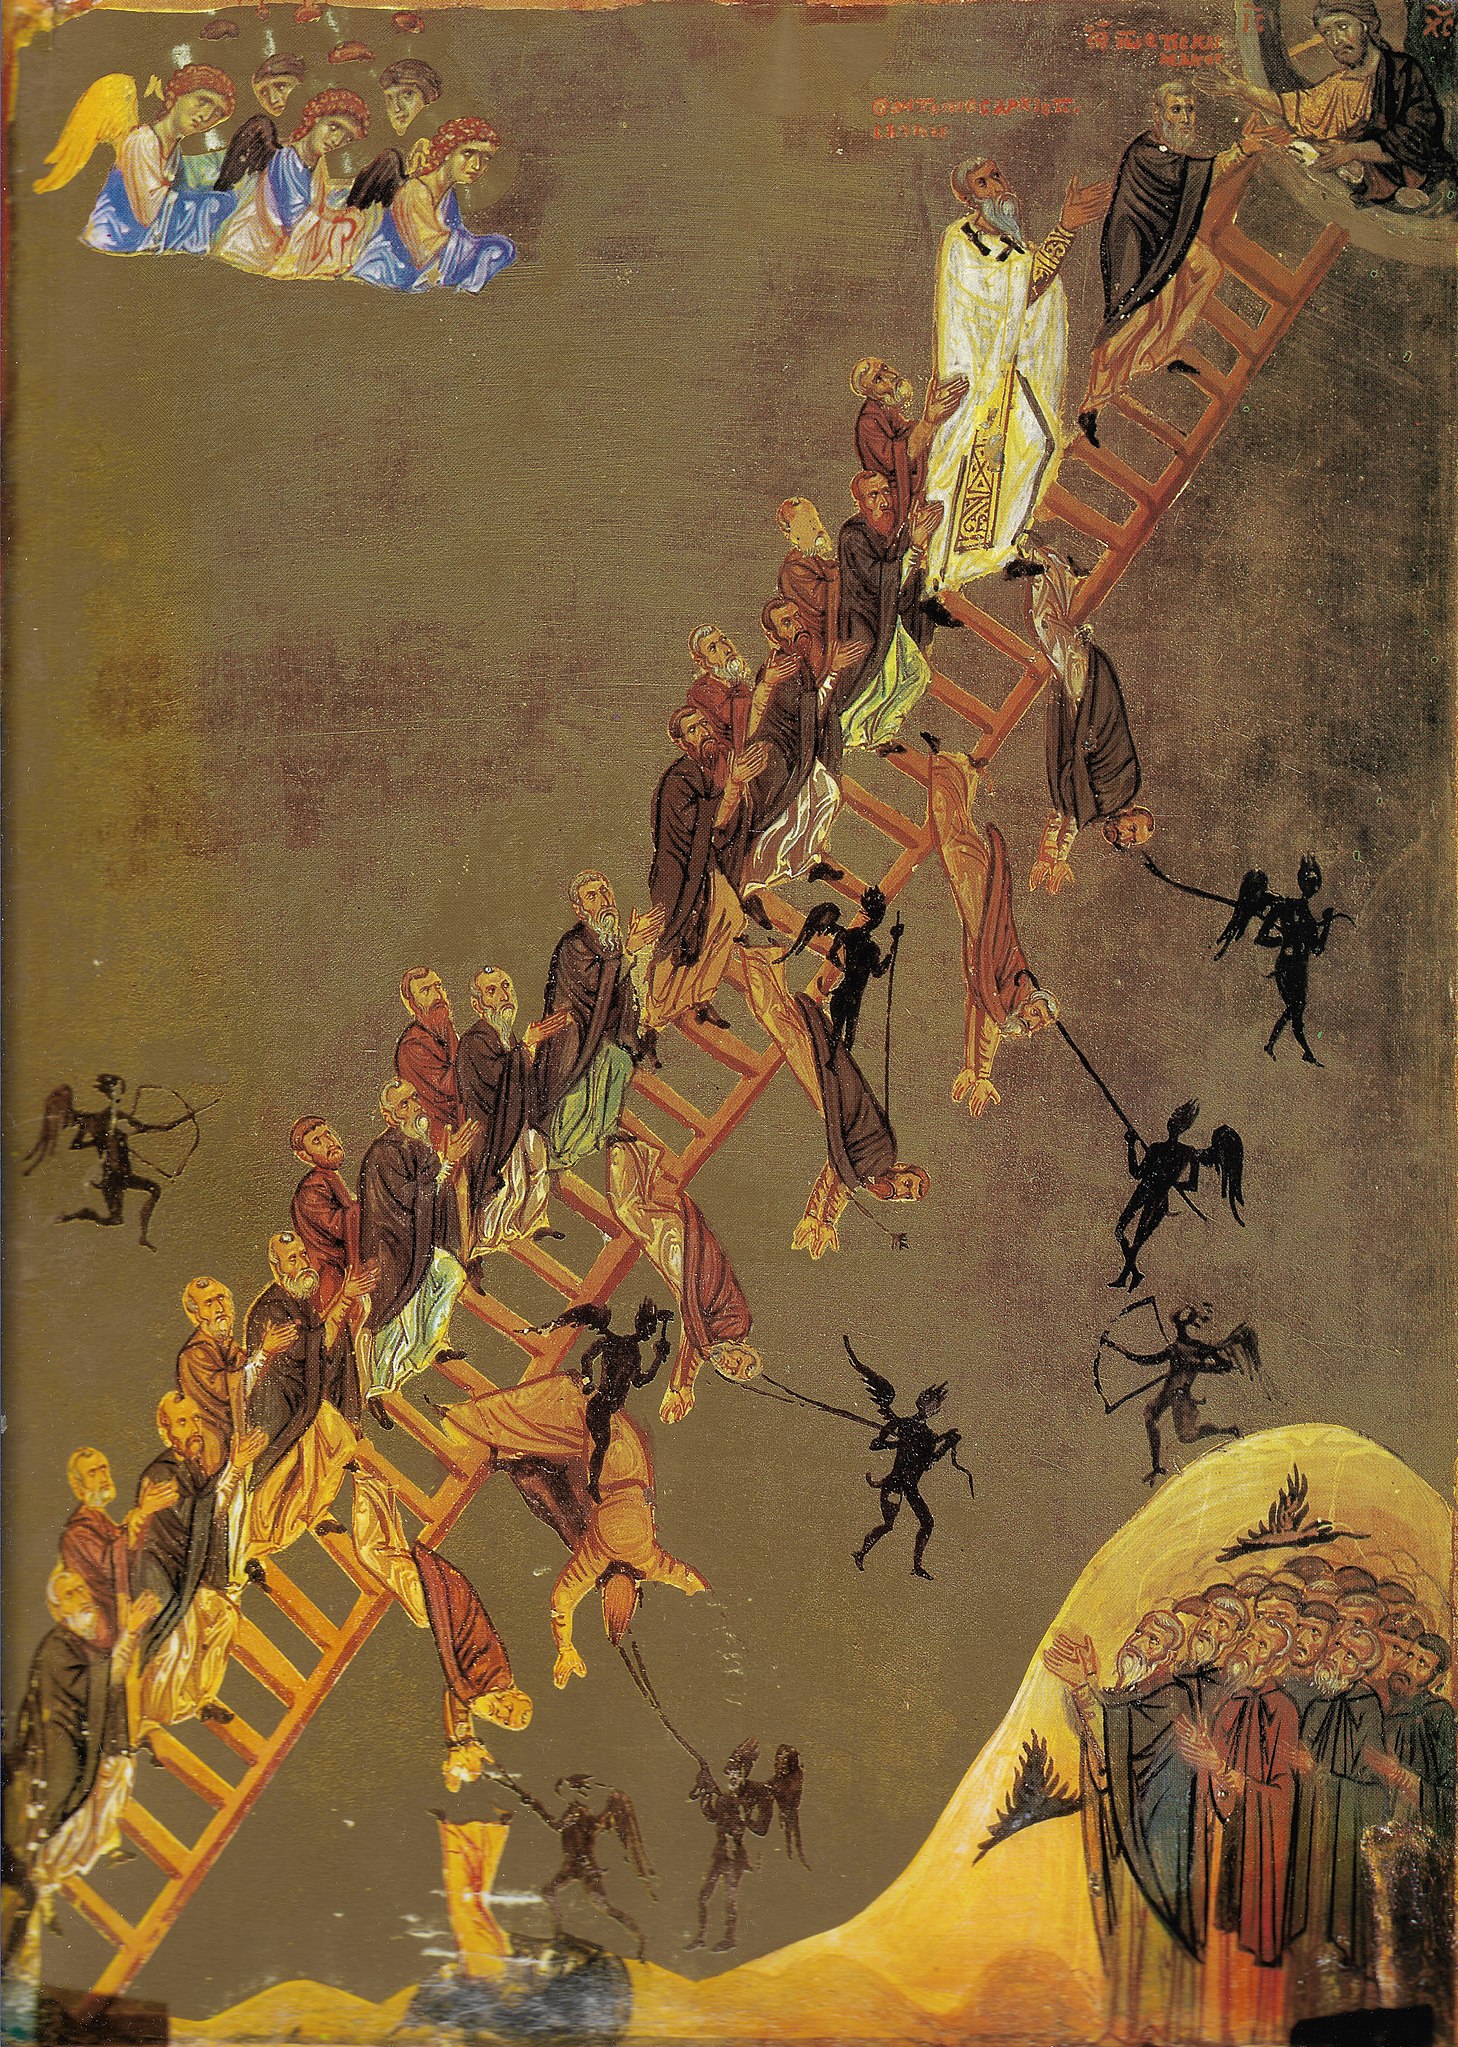 سلم الصعود الالهي by غير معروف فنان - القرن الثاني عشر 